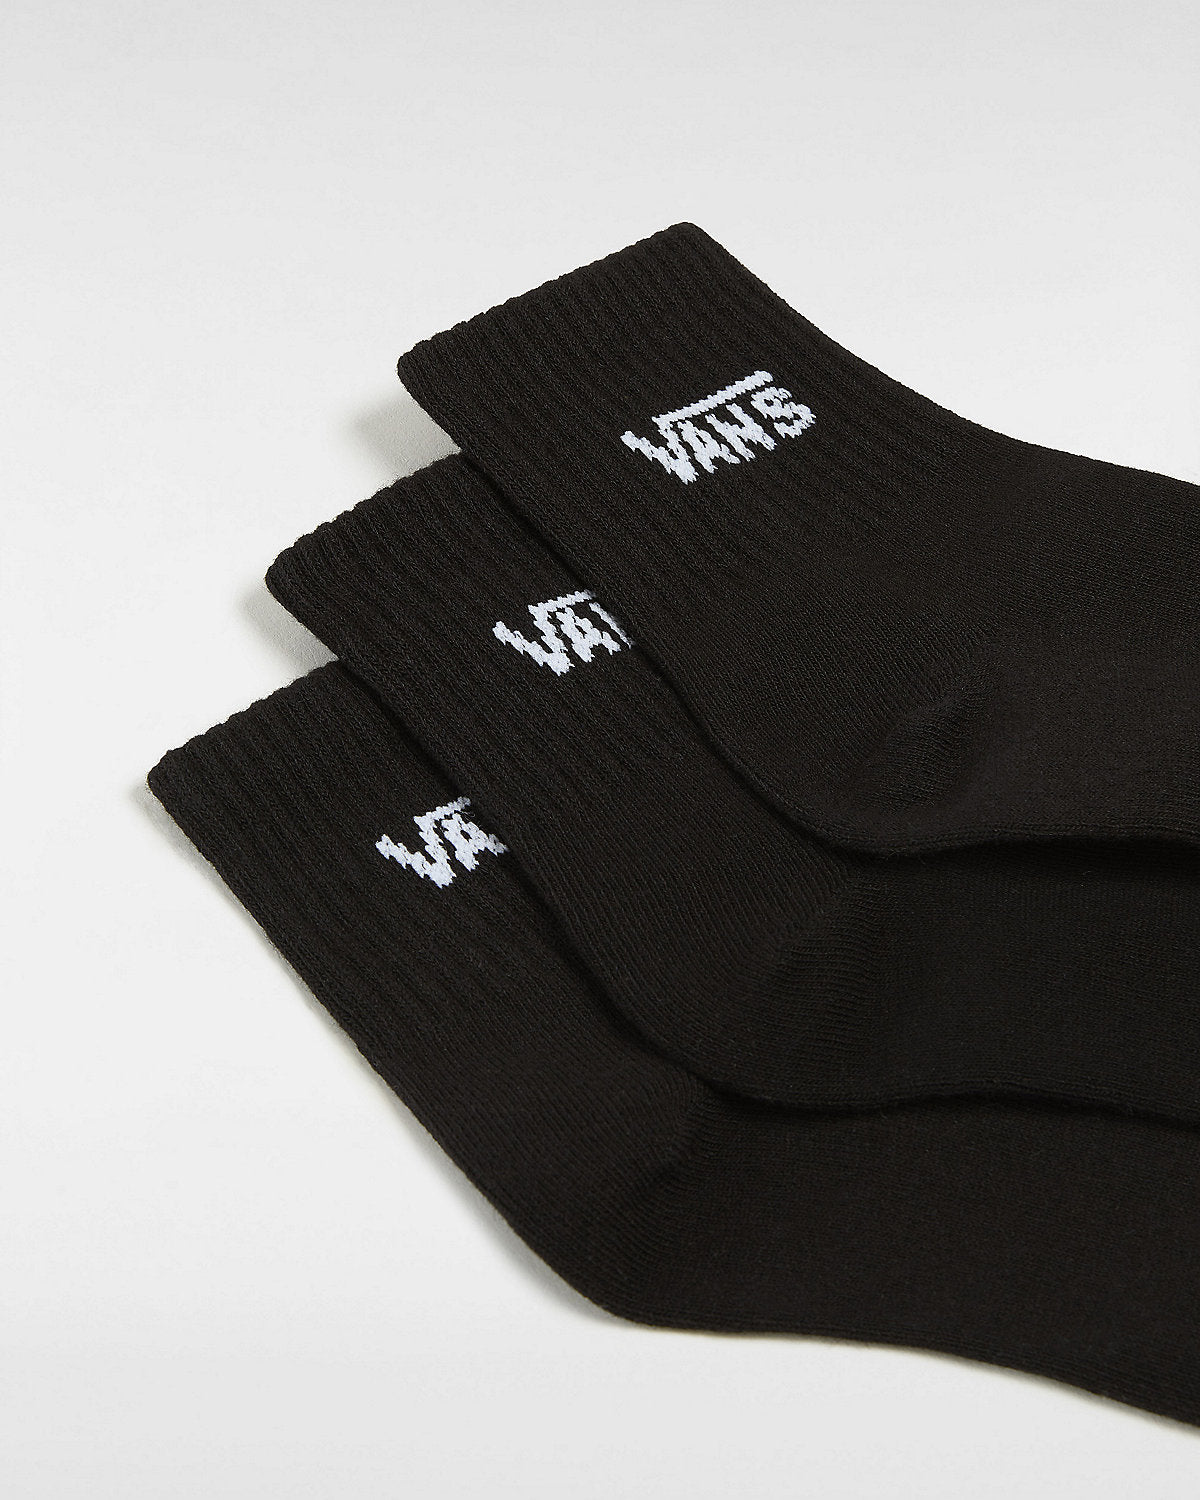 VANS Womens Half Crew Socks (3 Pairs) - Black